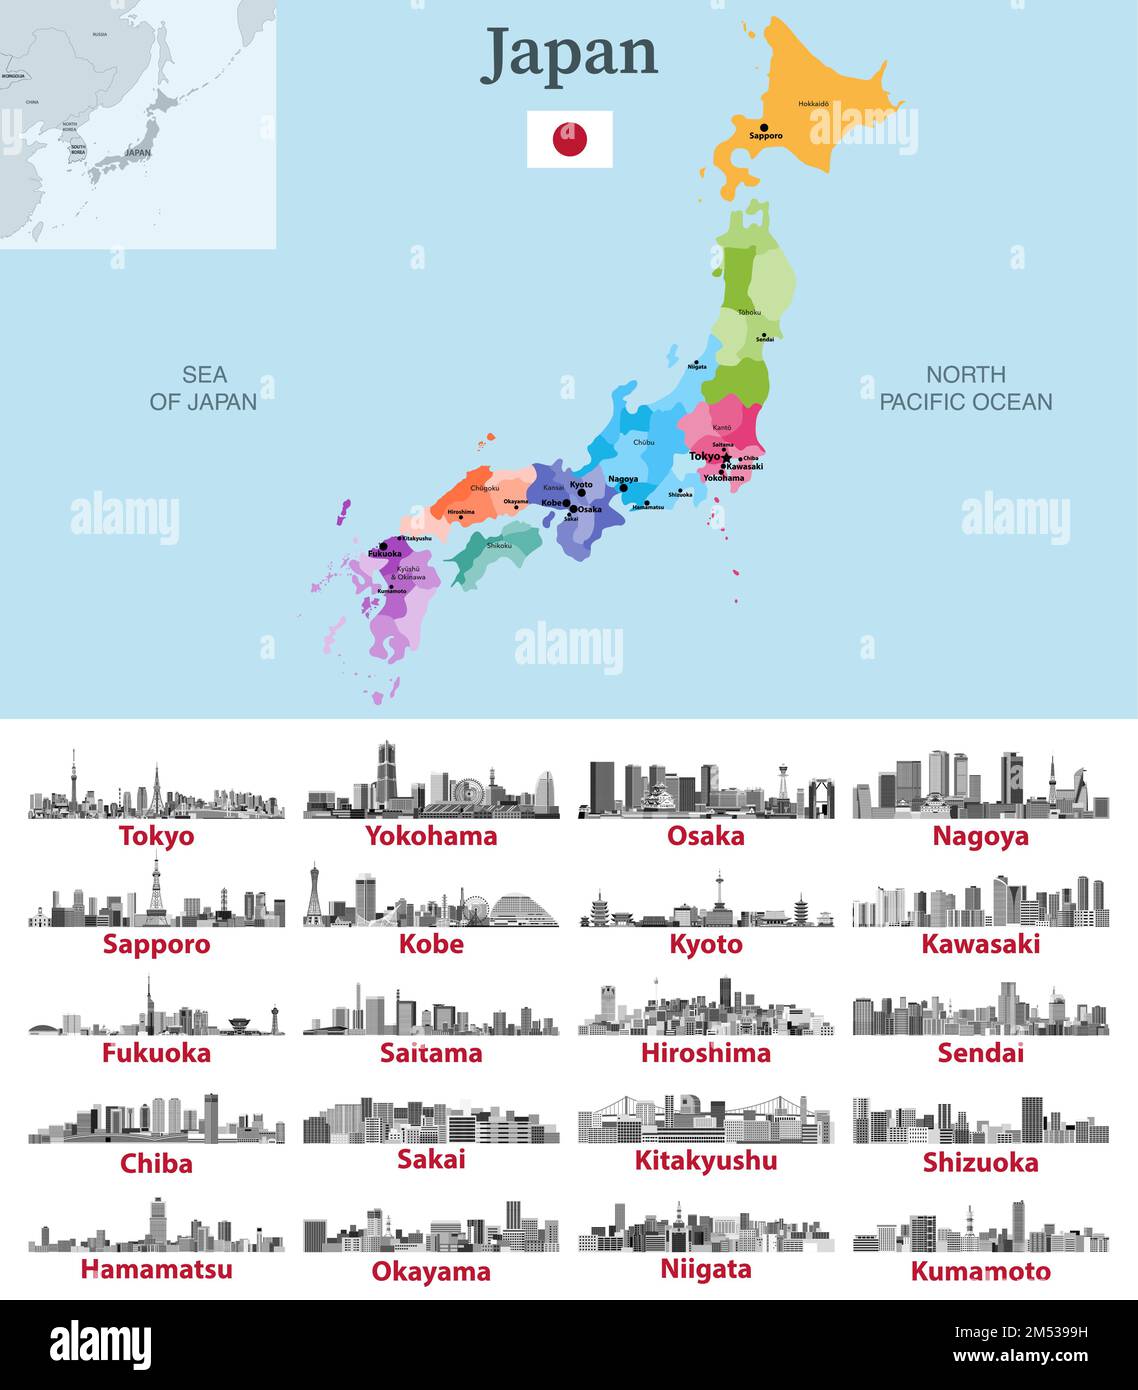 Carte du Japon avec les principales villes. Illustrations en noir et blanc des villes japonaises. Ensemble de vecteurs Illustration de Vecteur